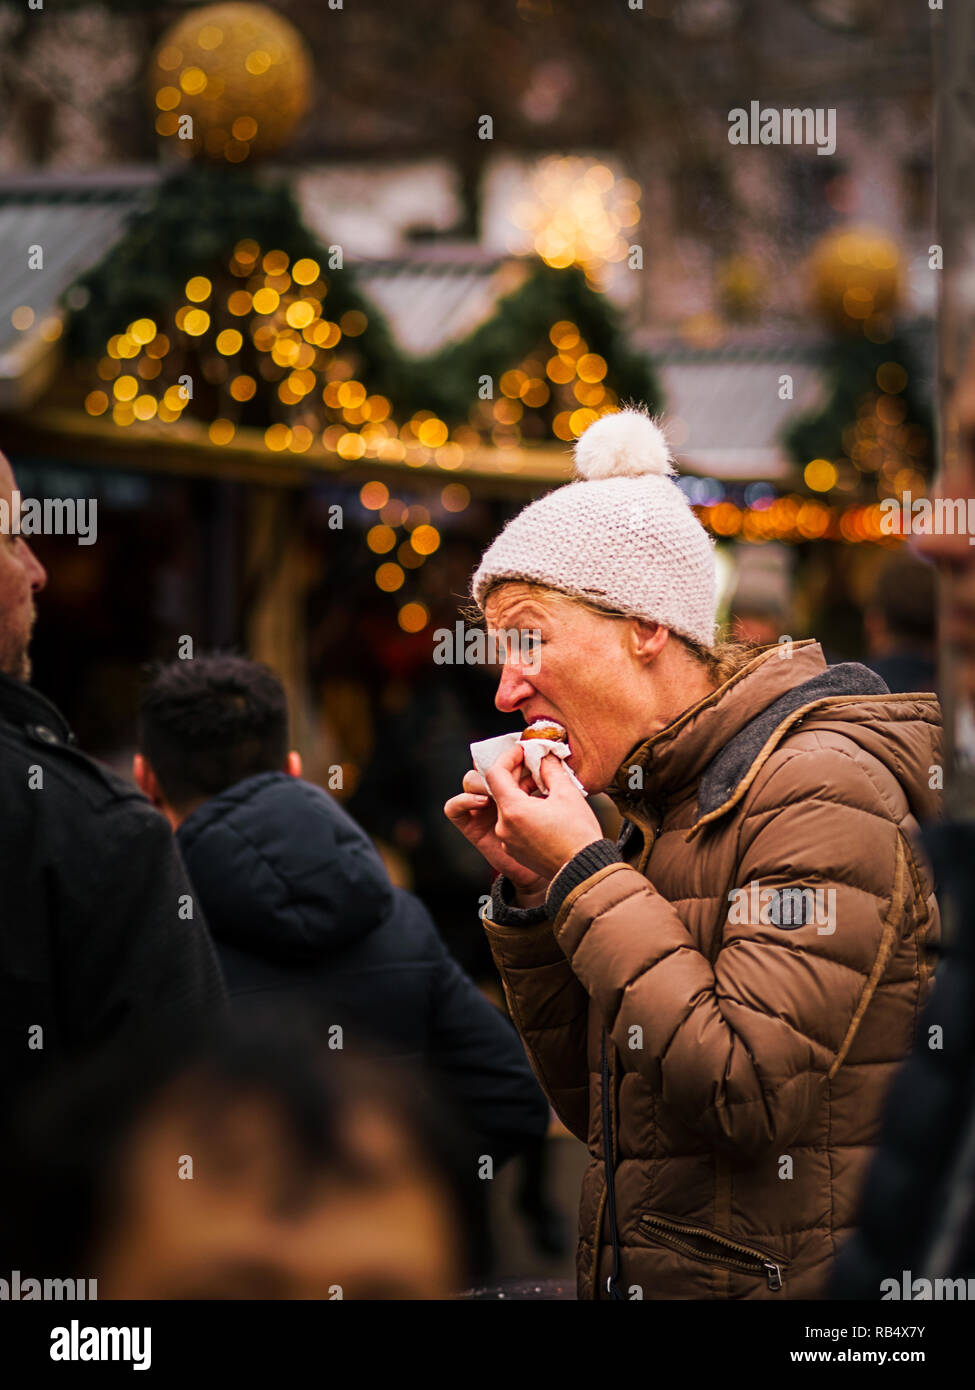 El 25 de diciembre de 2018- Amberes Bélgica: Cierre con teleobjetivo de mujer vistiendo ropa de invierno marrón con sombrero de lana de color blanco en una feria de Navidad comer Foto de stock